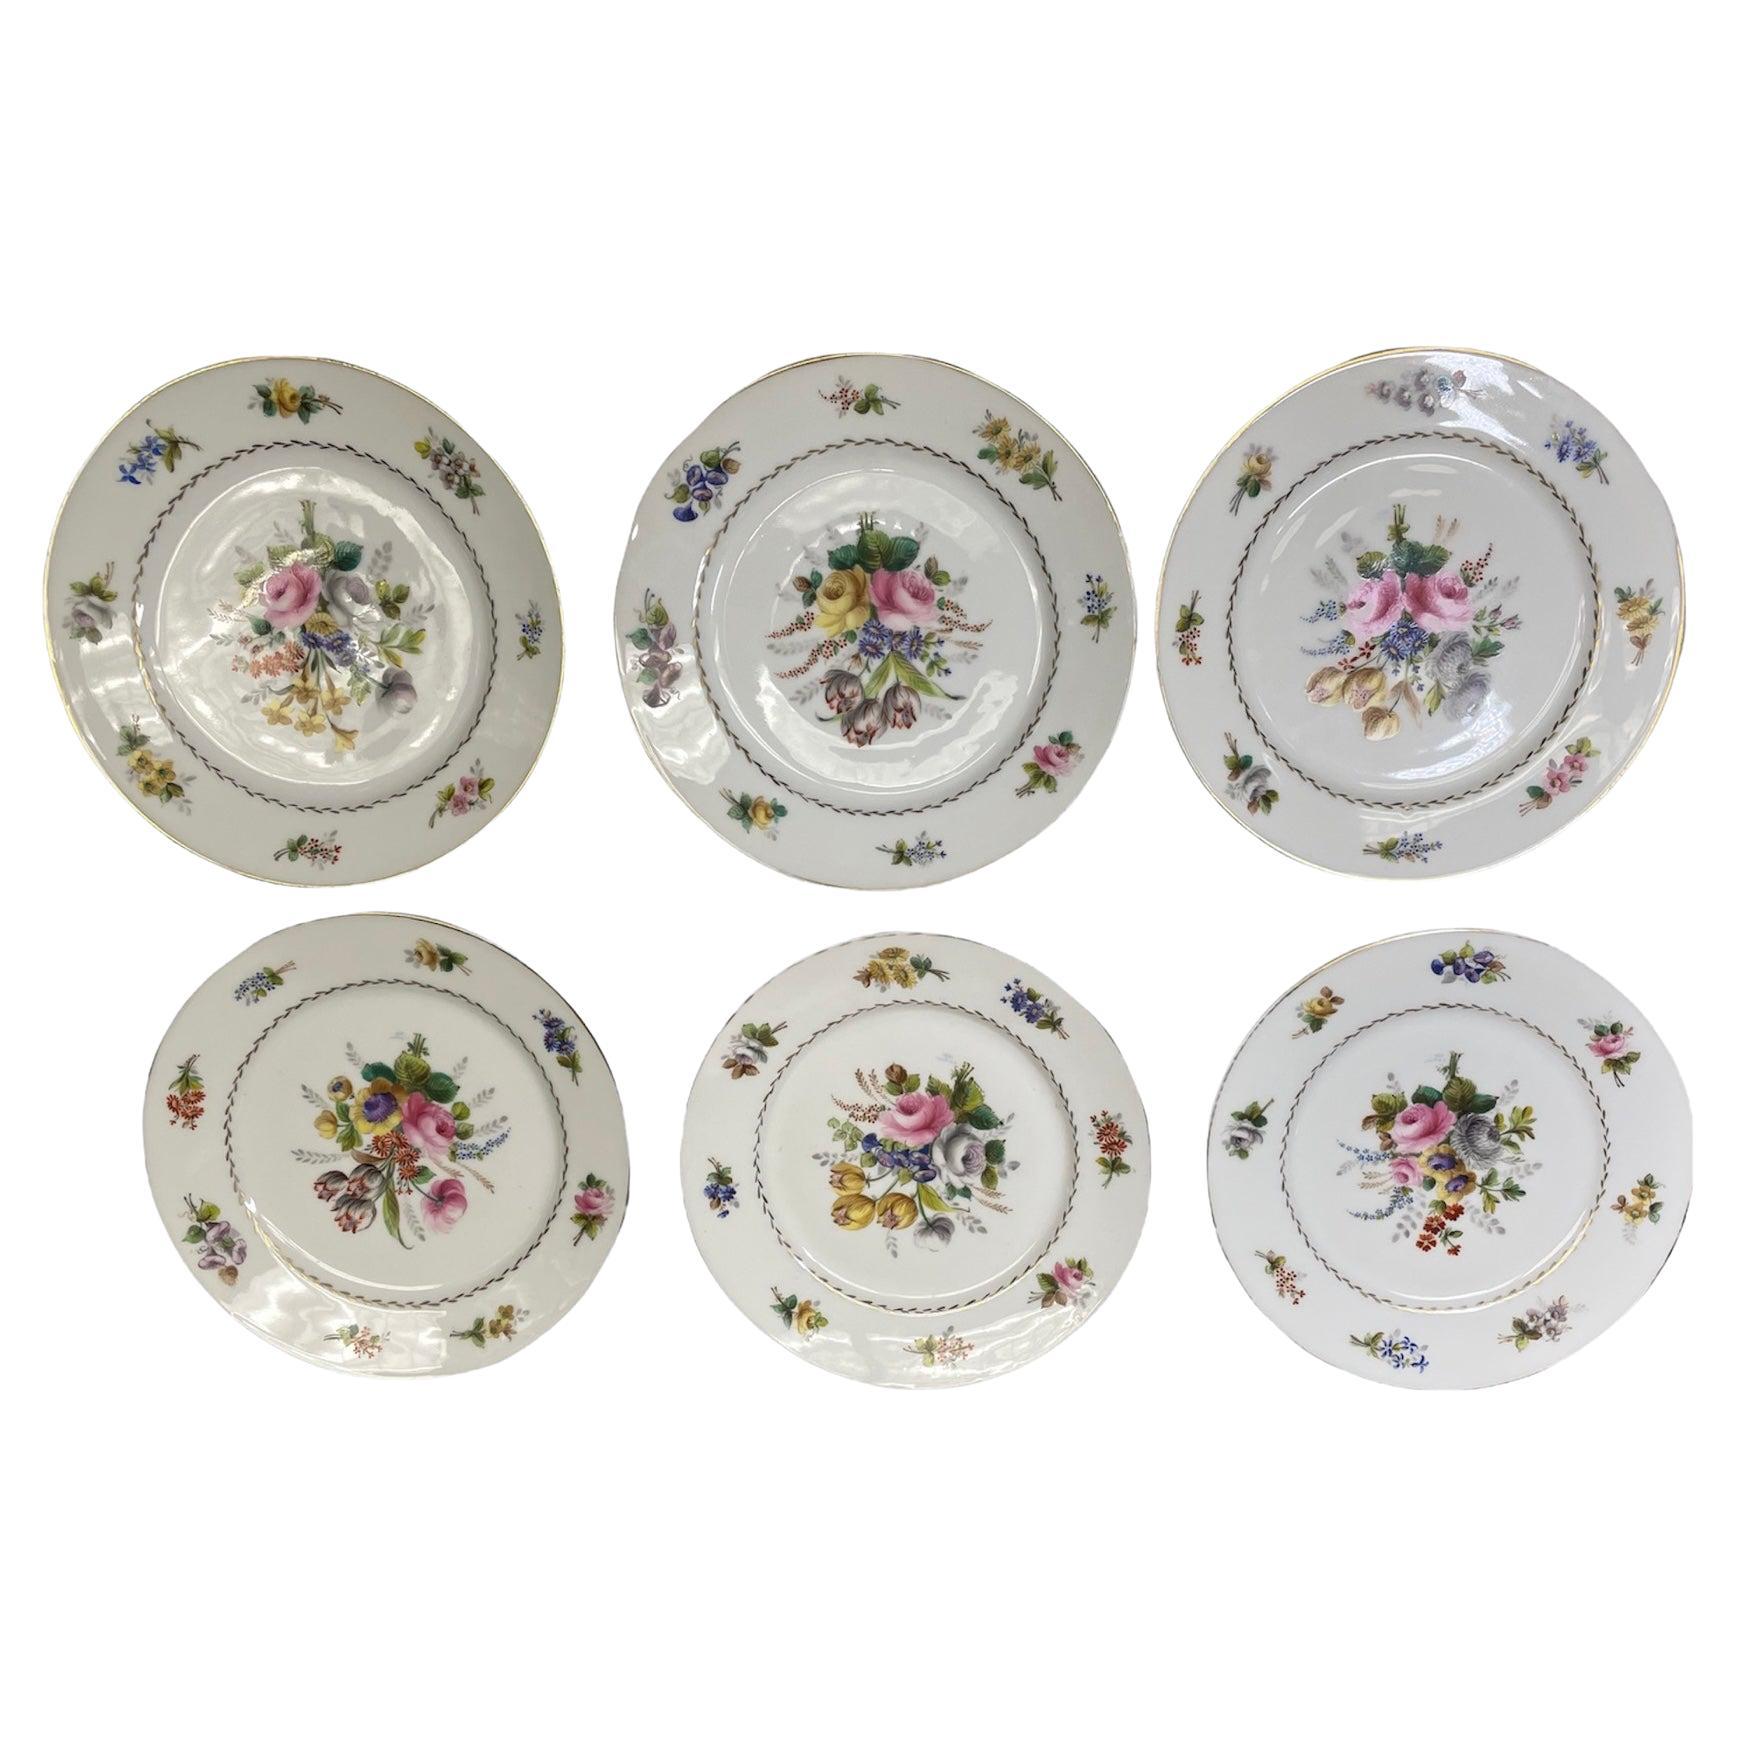 Ensemble de six assiettes en porcelaine de la collection de la Manoir of Montsalvy